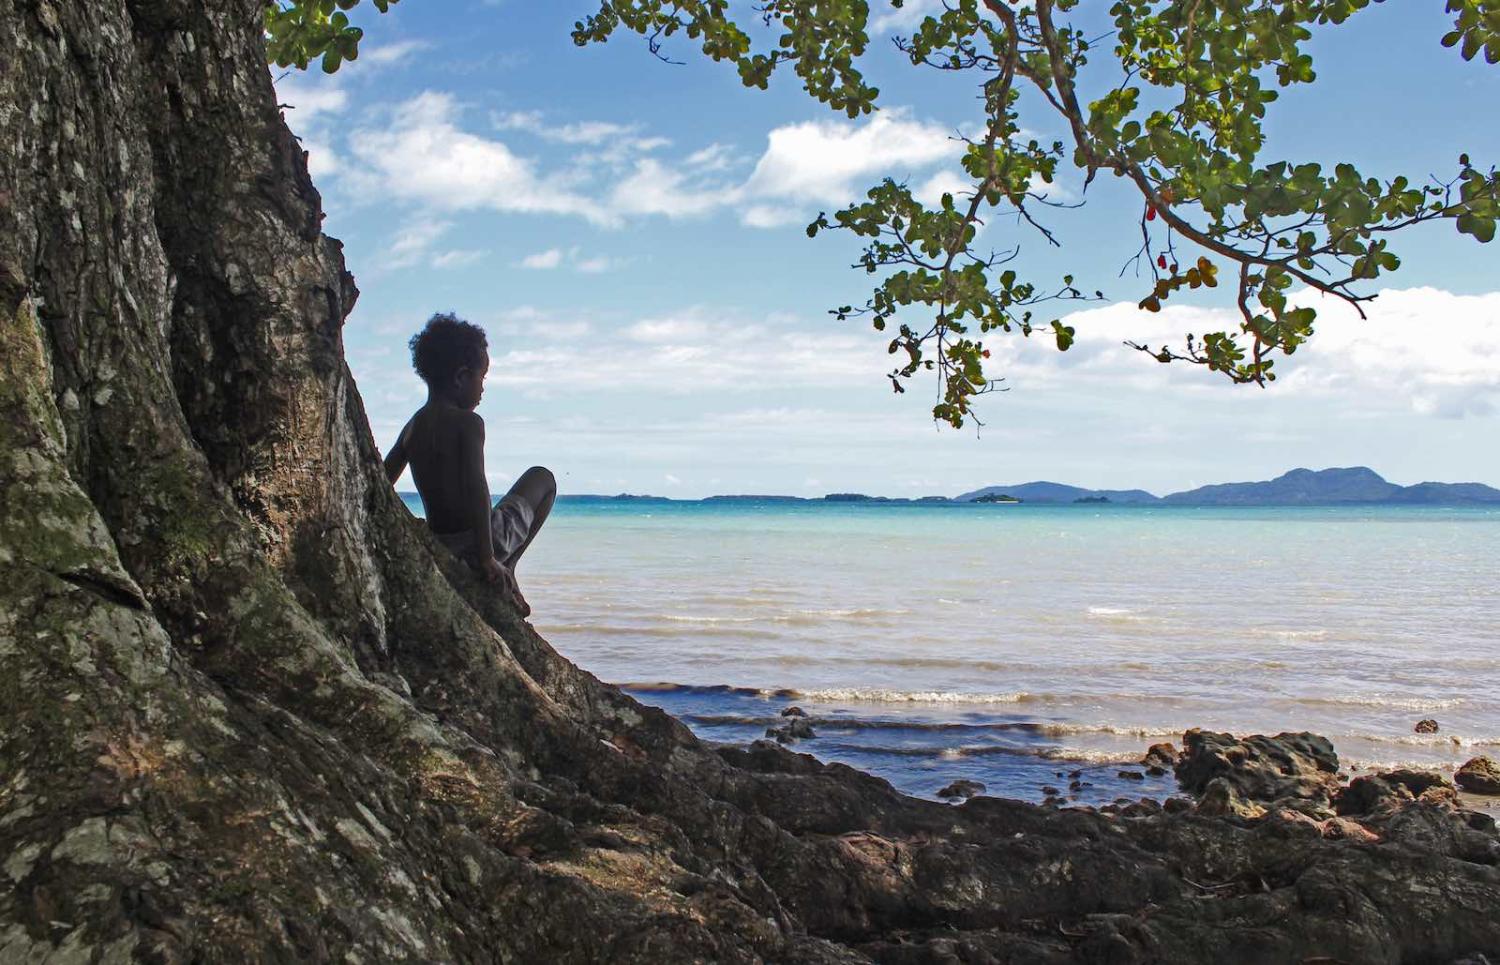 Buka, Bougainville (Photo: Looks like Antman/Flickr)